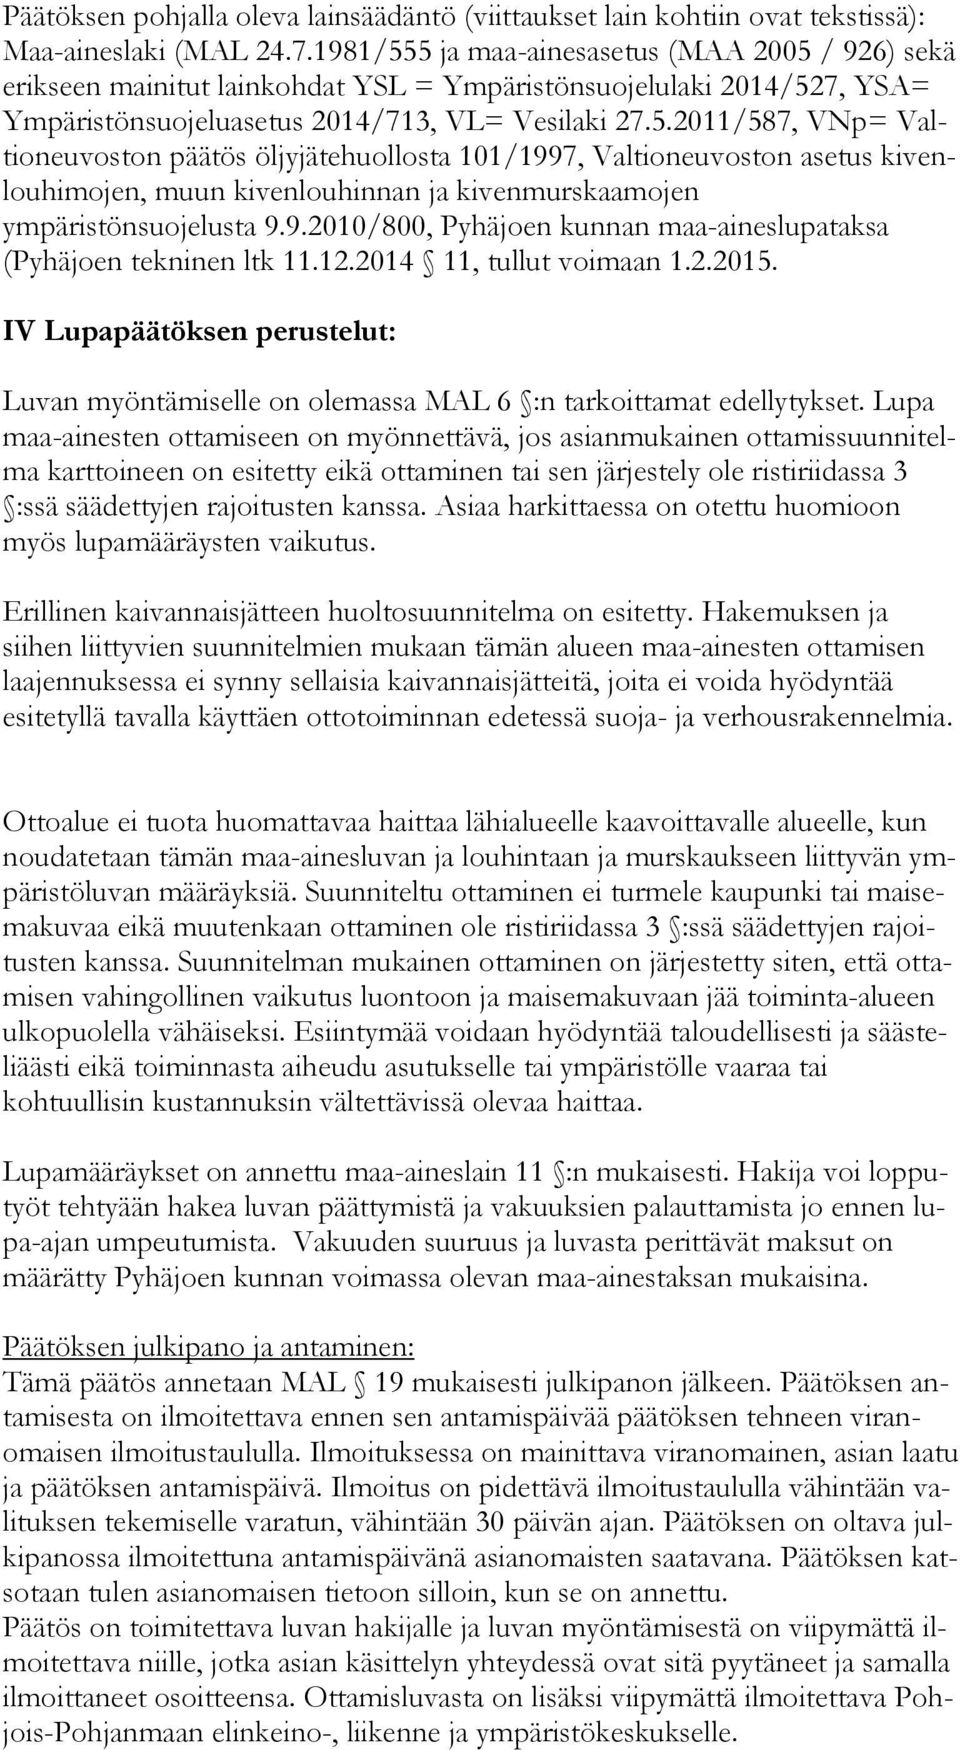 9.2010/800, Pyhäjoen kunnan maa-aineslupataksa (Pyhäjoen tekninen ltk 11.12.2014 11, tullut voimaan 1.2.2015.